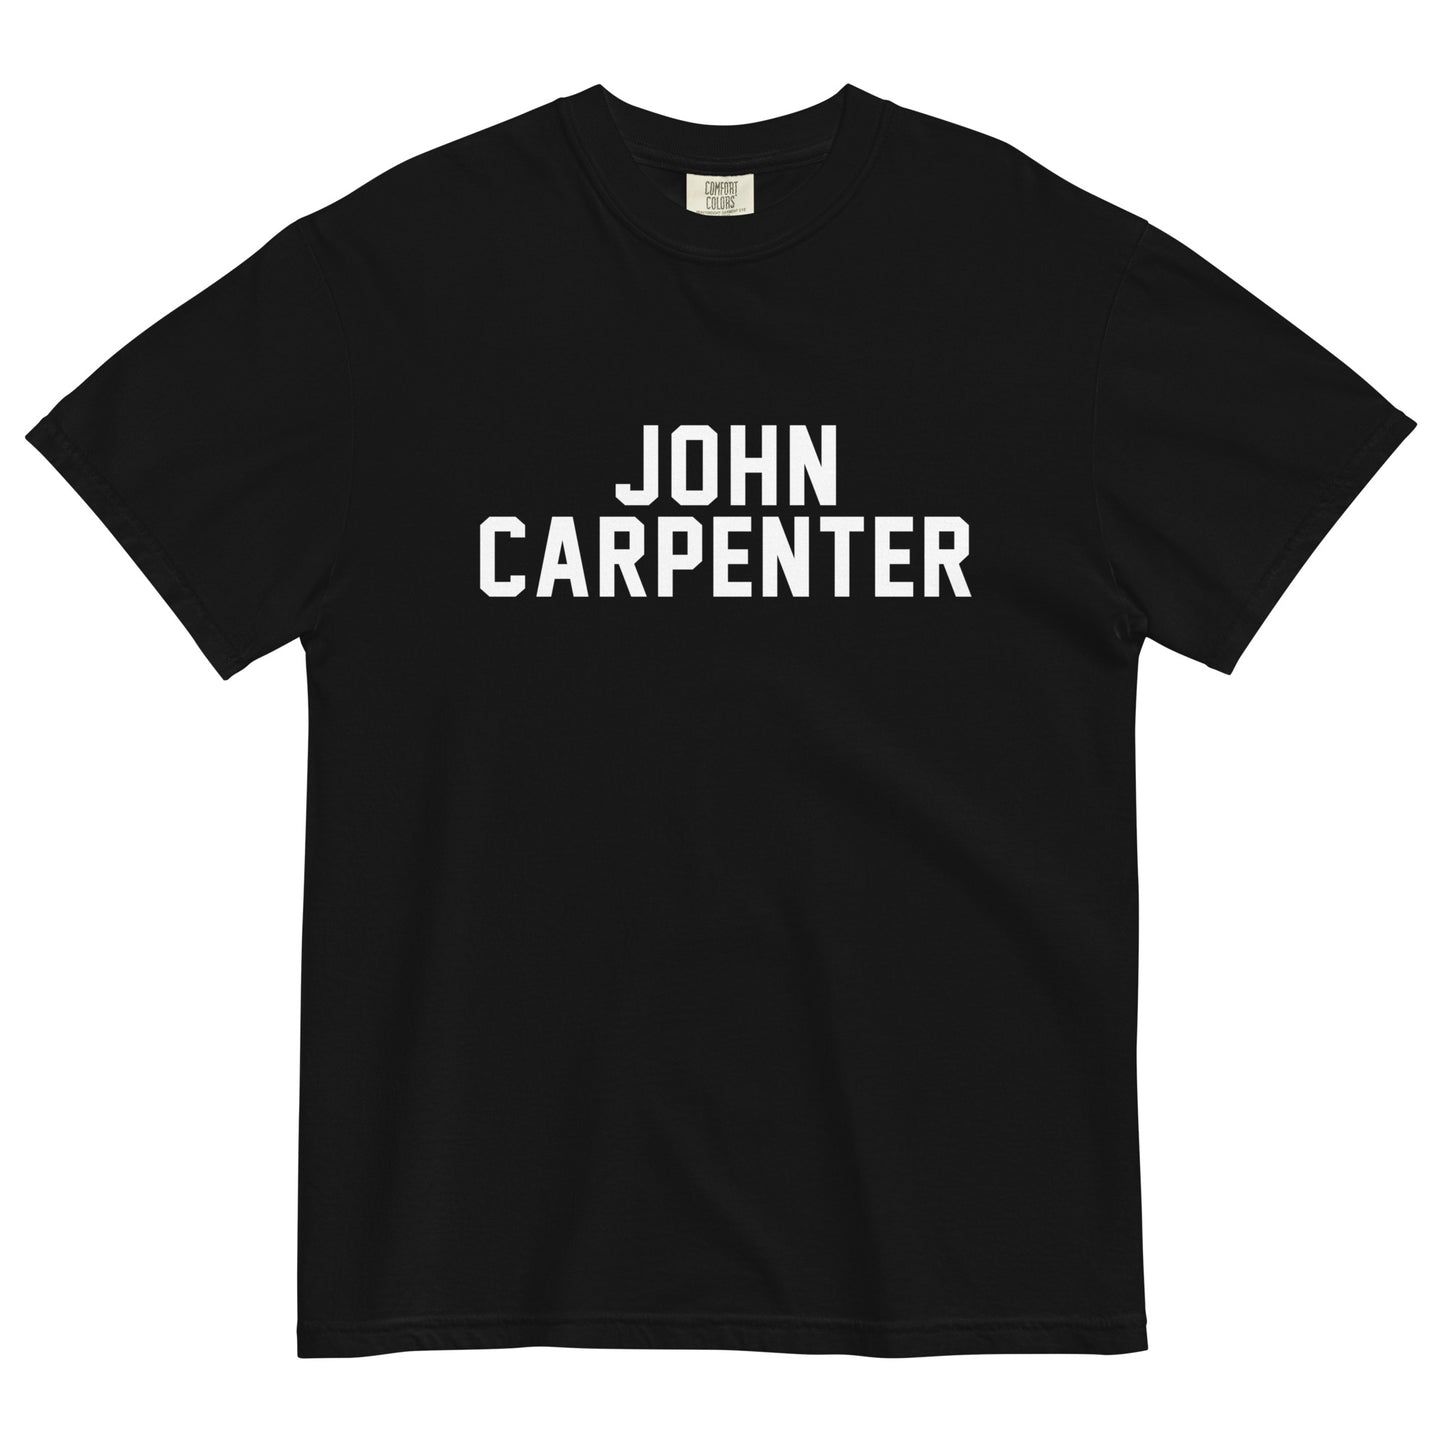 JOHN CARPENTER